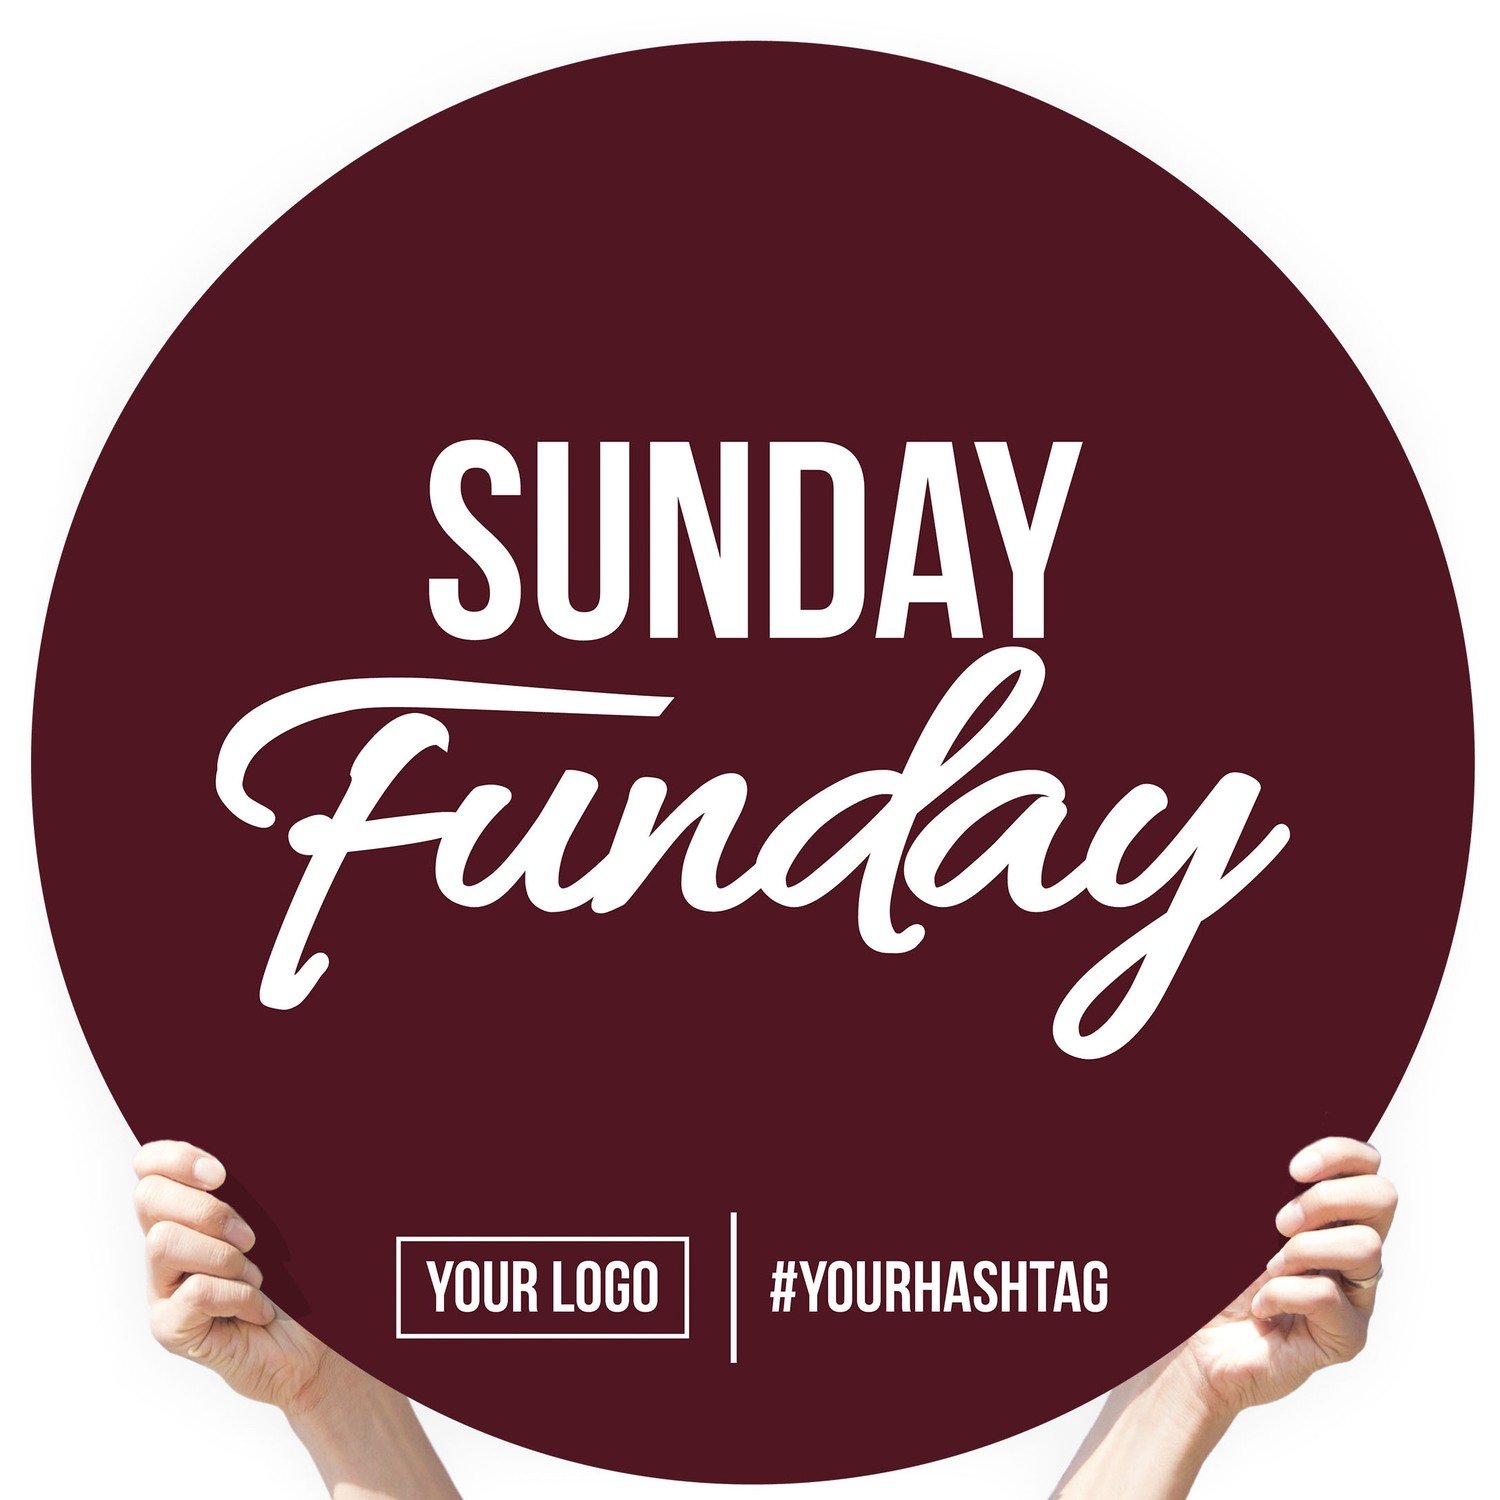 Greeting Sign - "Sunday Funday"